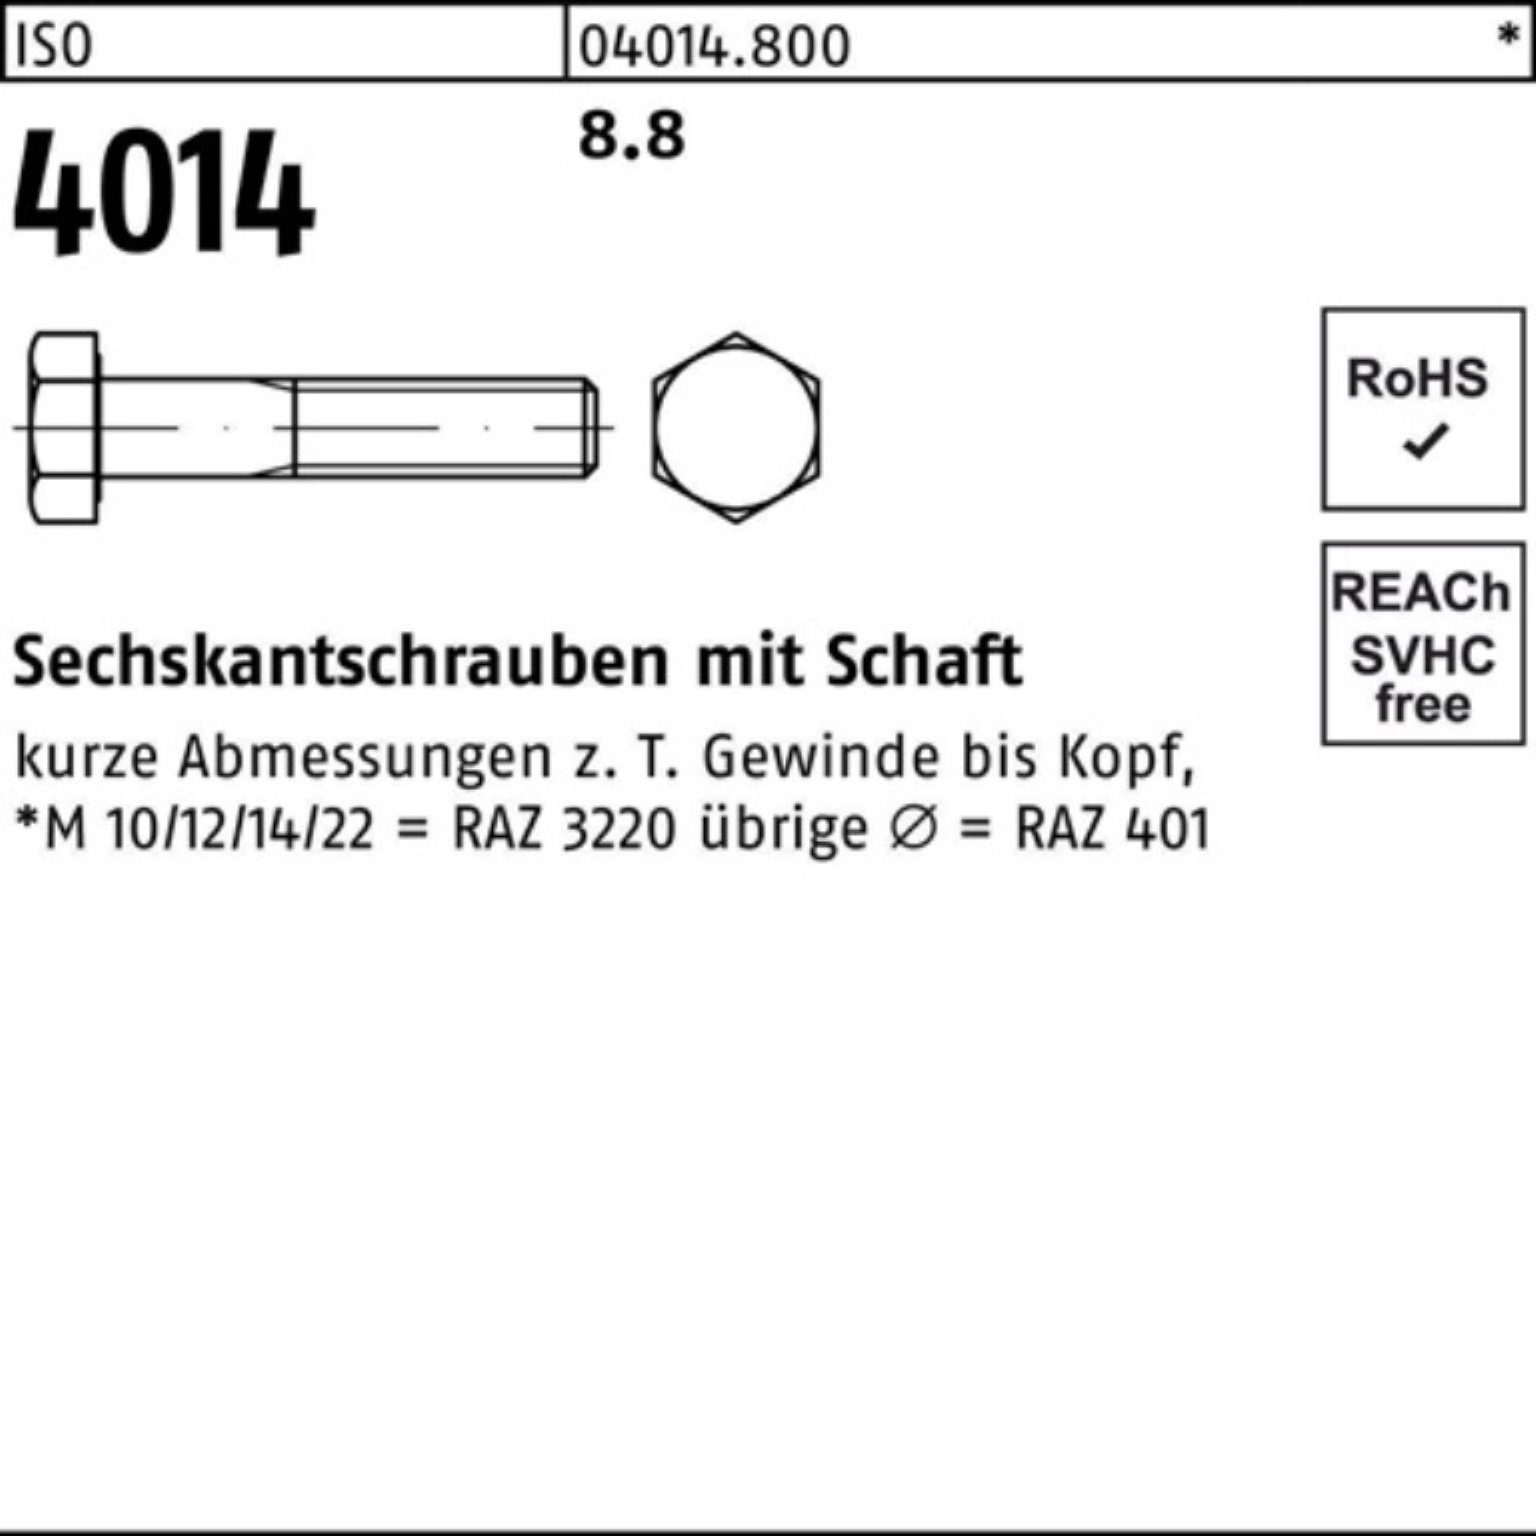 Bufab Sechskantschraube 100er ISO 8.8 Schaft Sechskantschraube Stück M39x ISO 180 1 4014 Pack